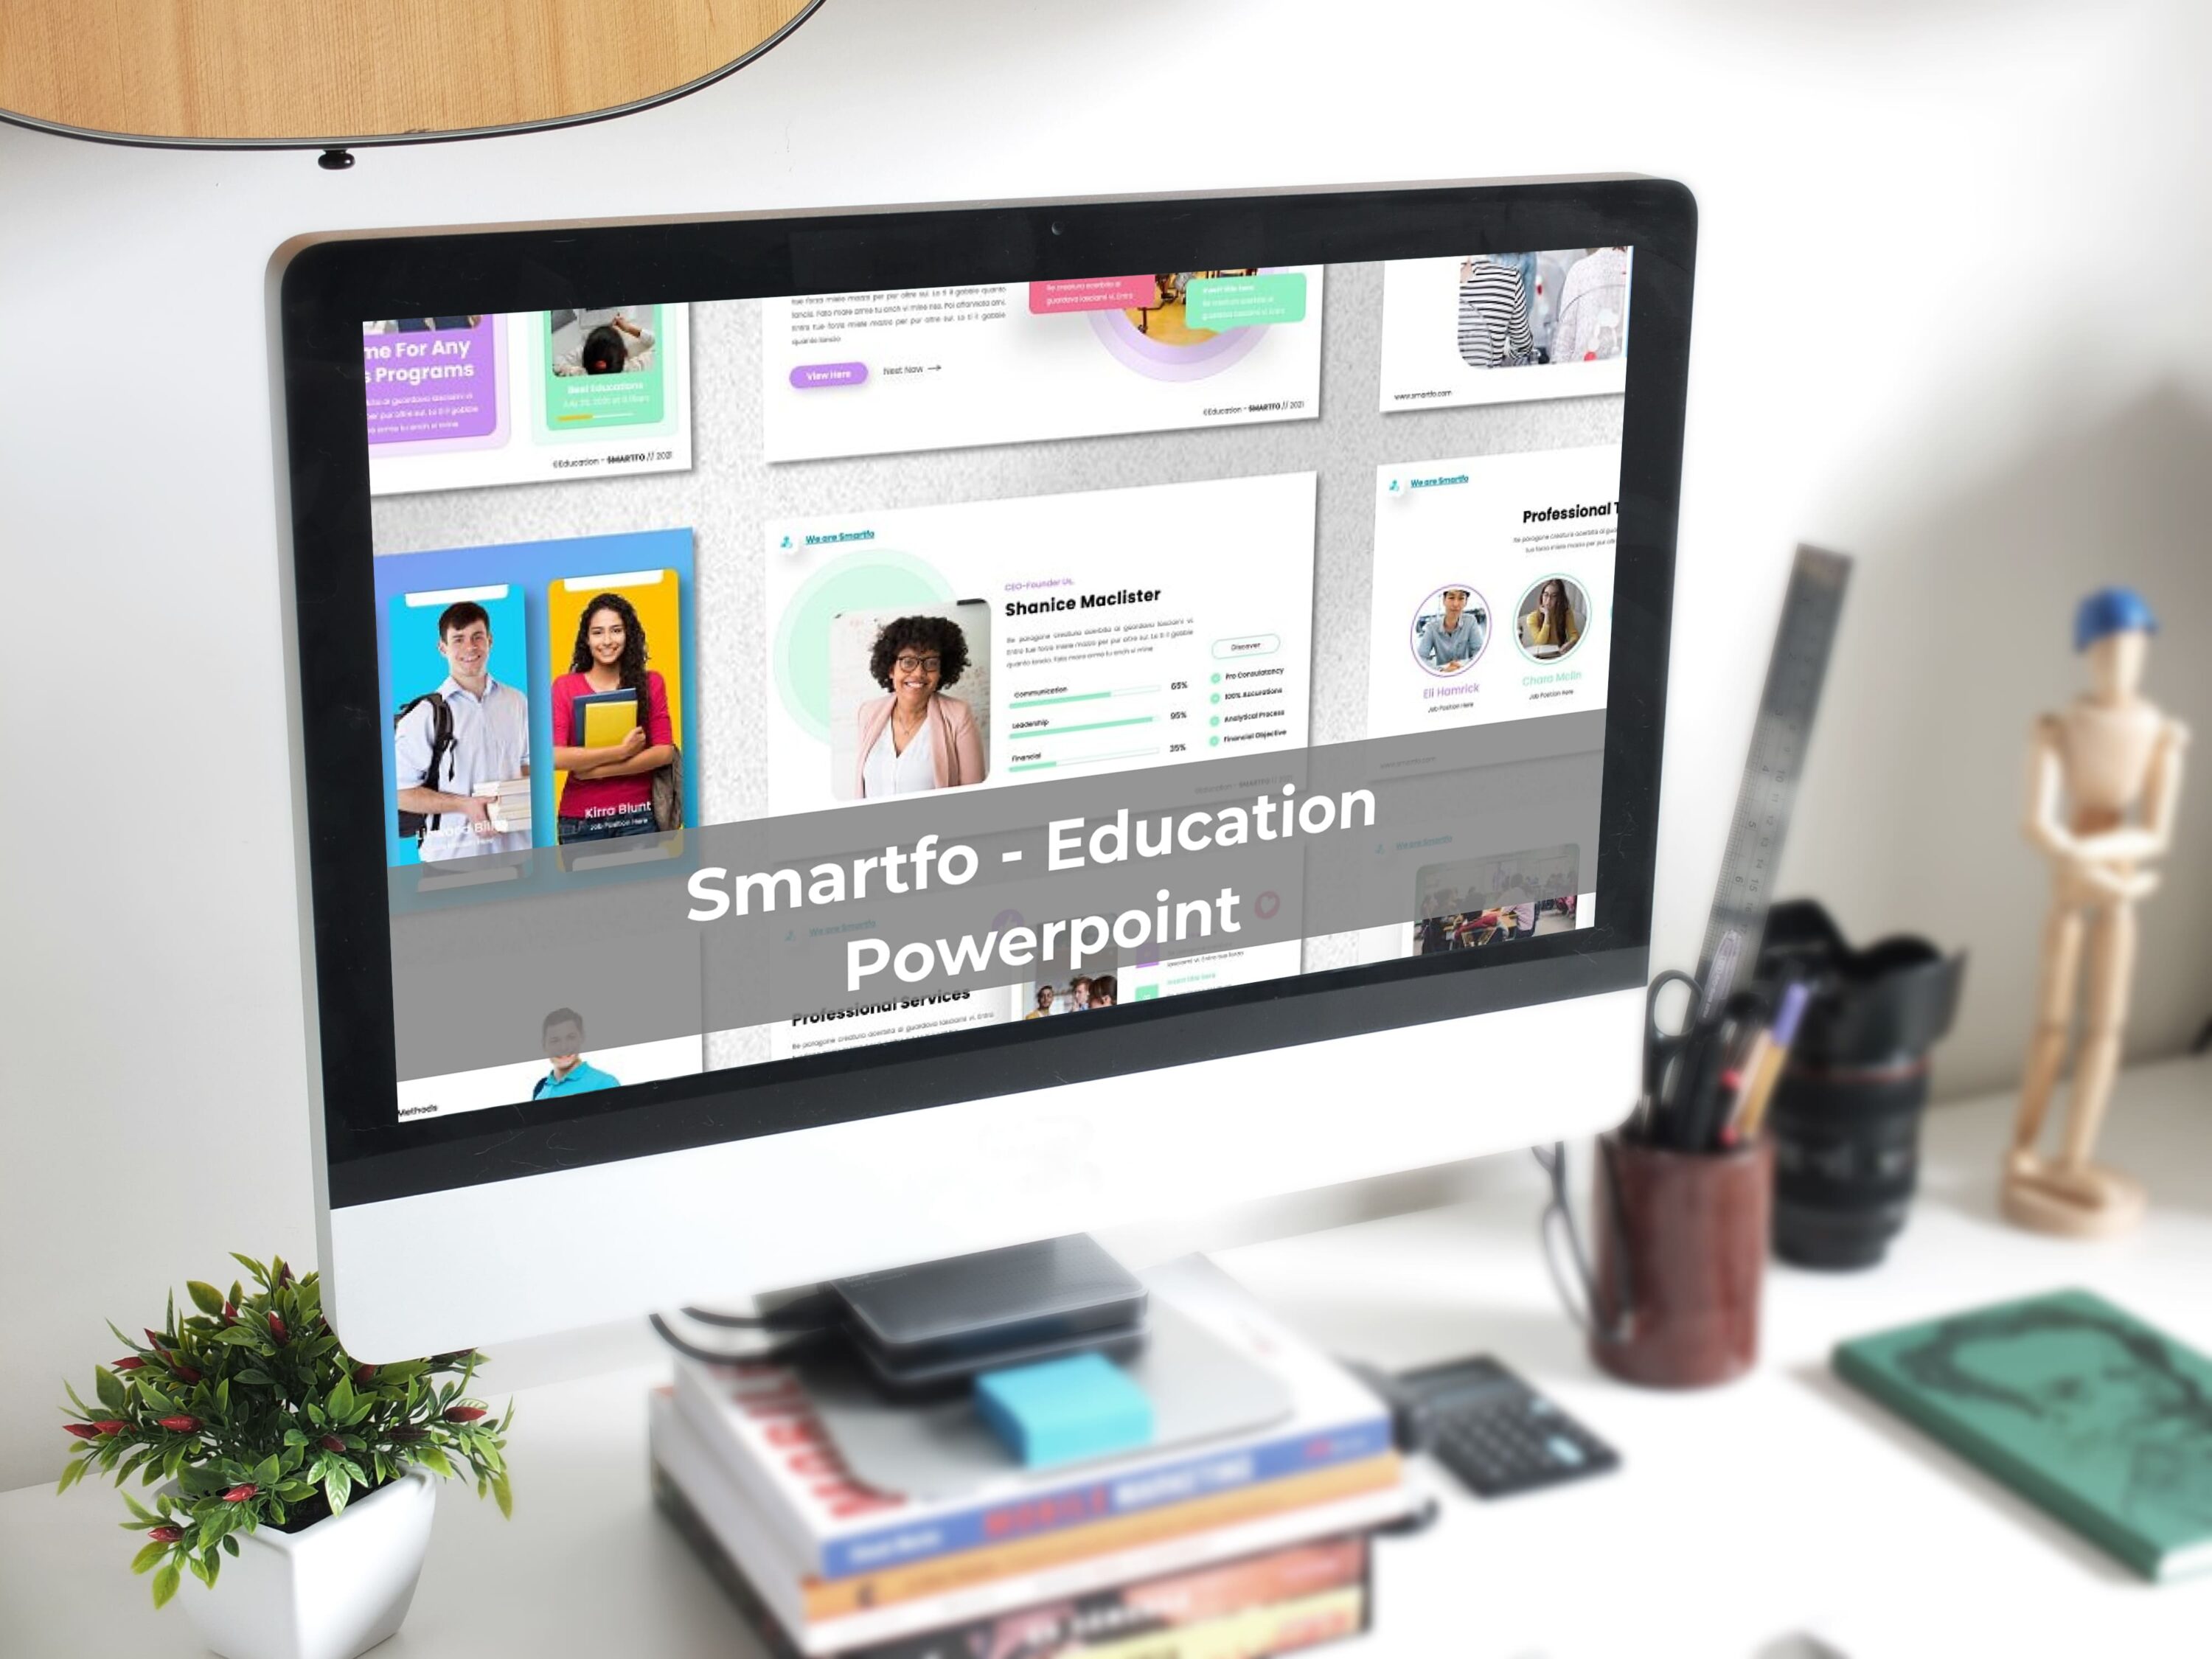 Smartfo - Education Powerpoint - desktop.